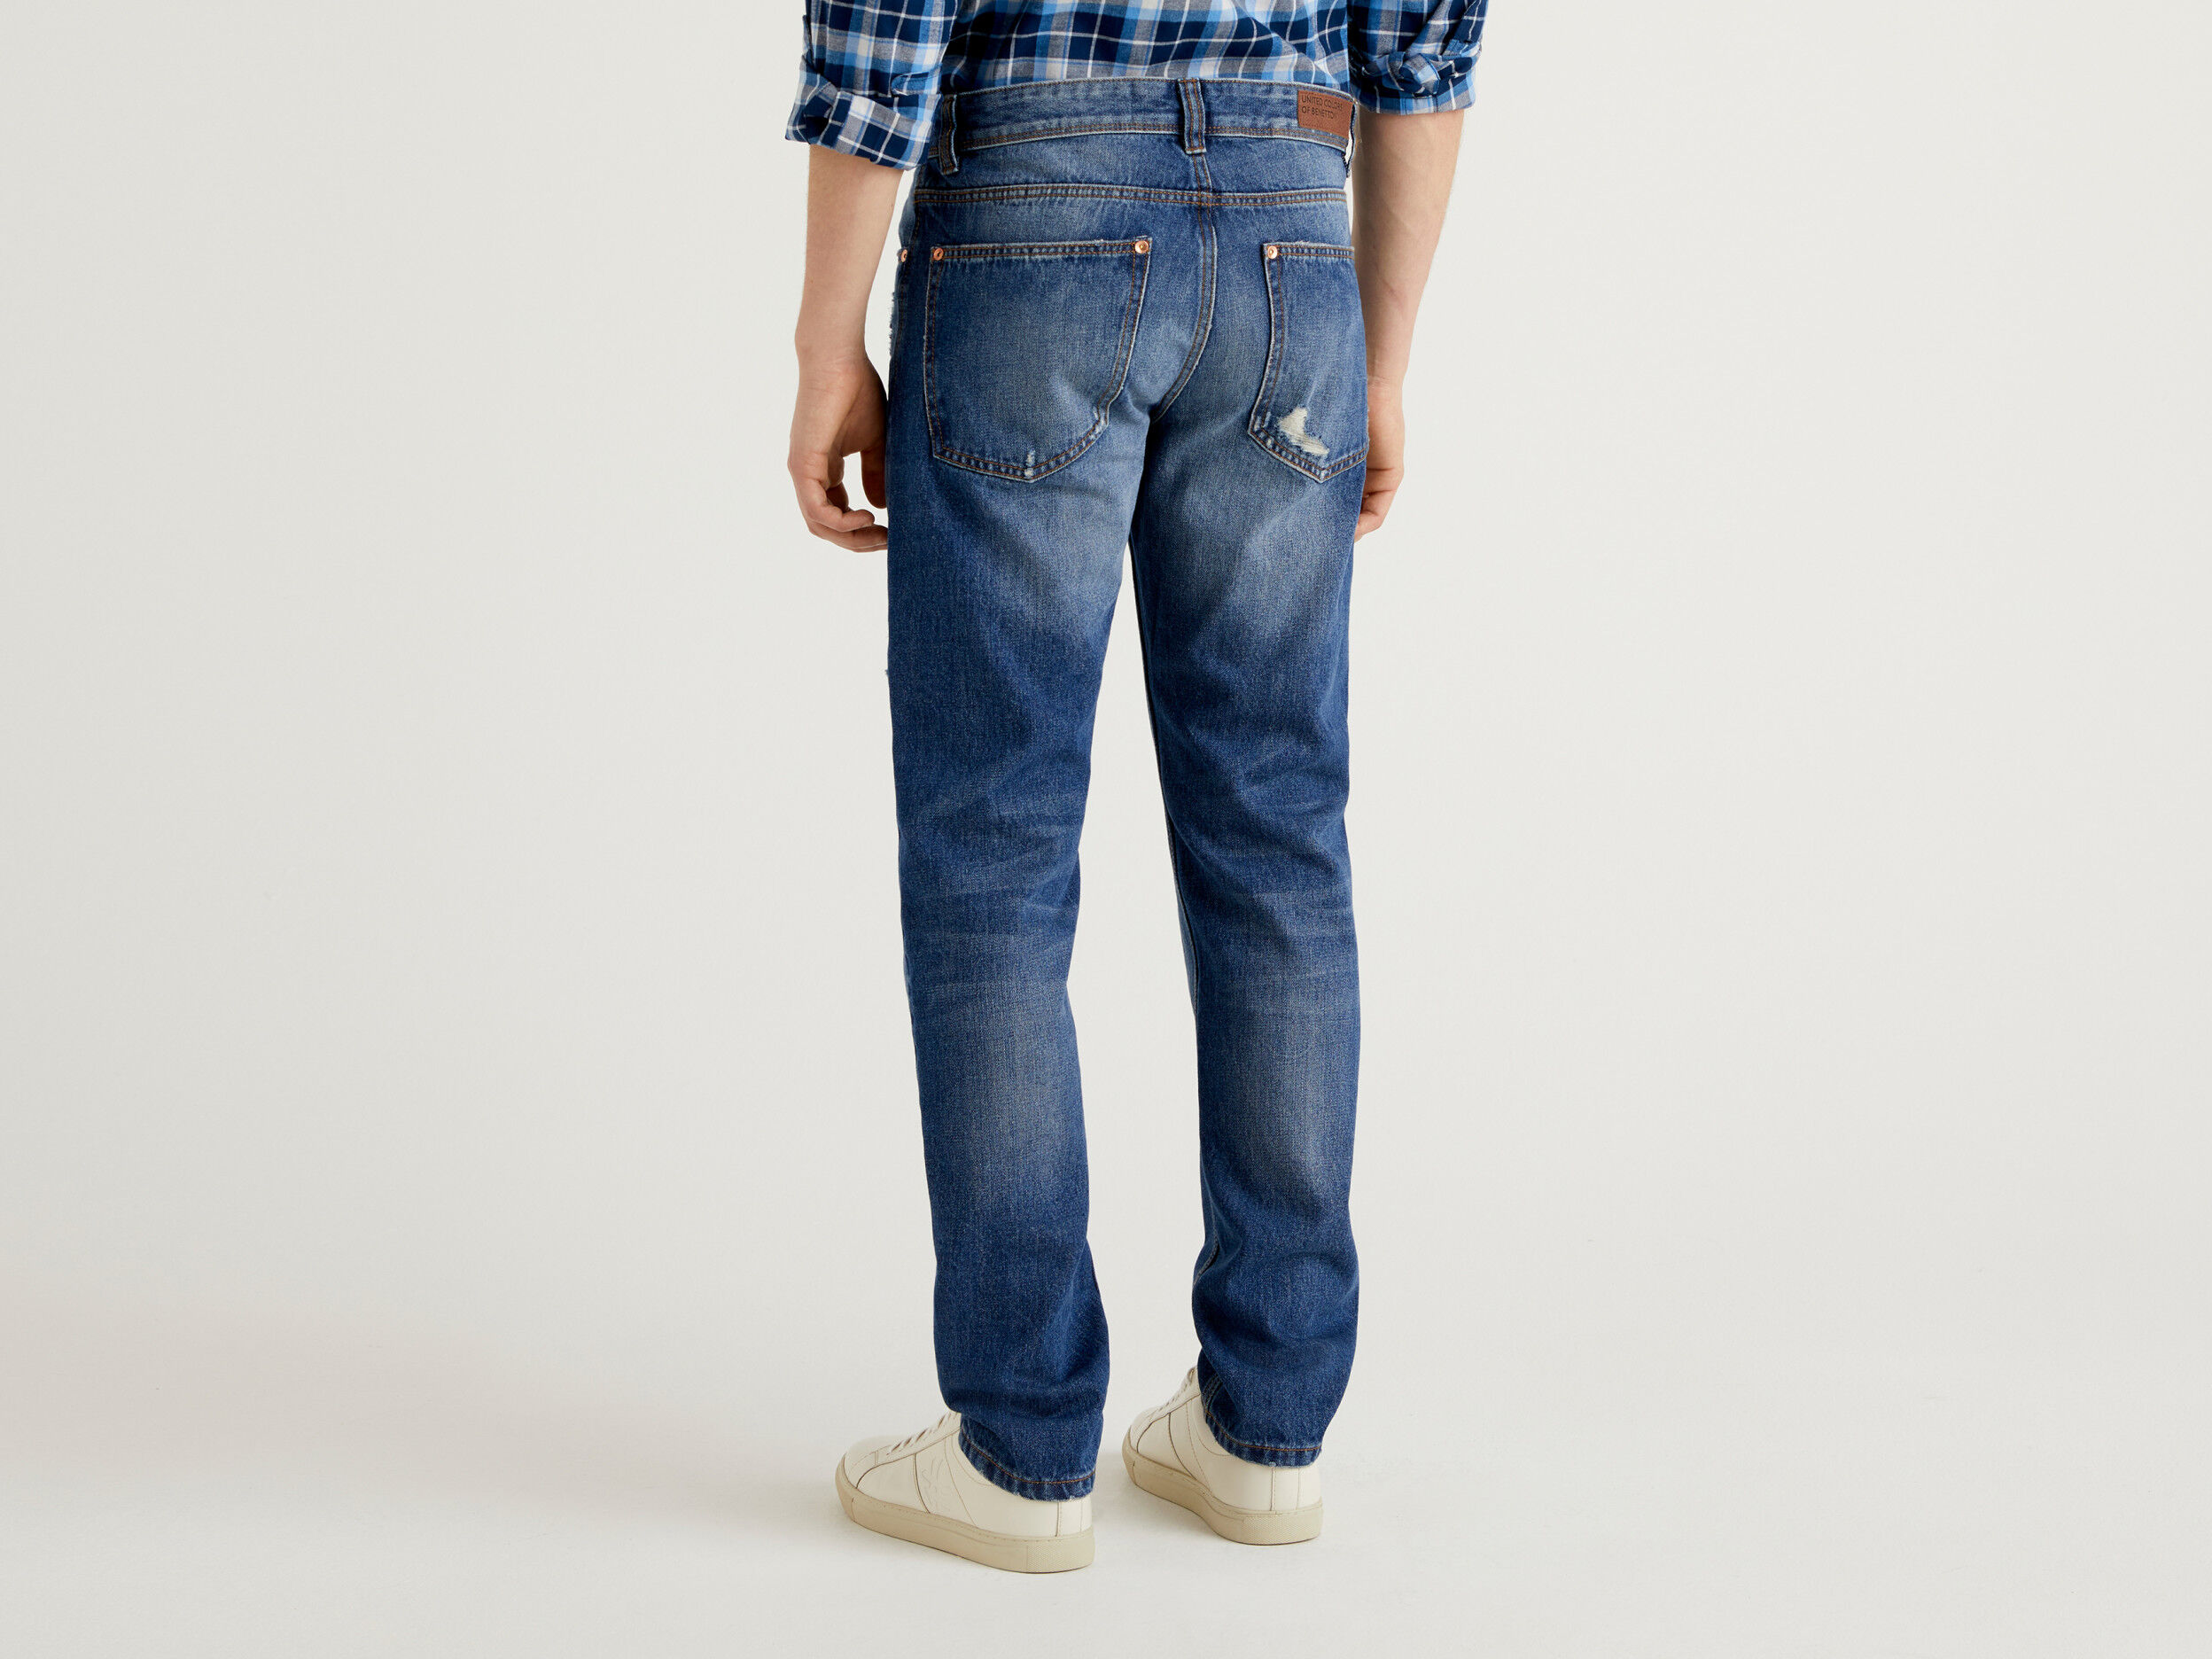 United Colors of Benetton Abbigliamento Pantaloni e jeans Jeans Jeans straight Jeans Straight Leg In Denim 100% Cotone 